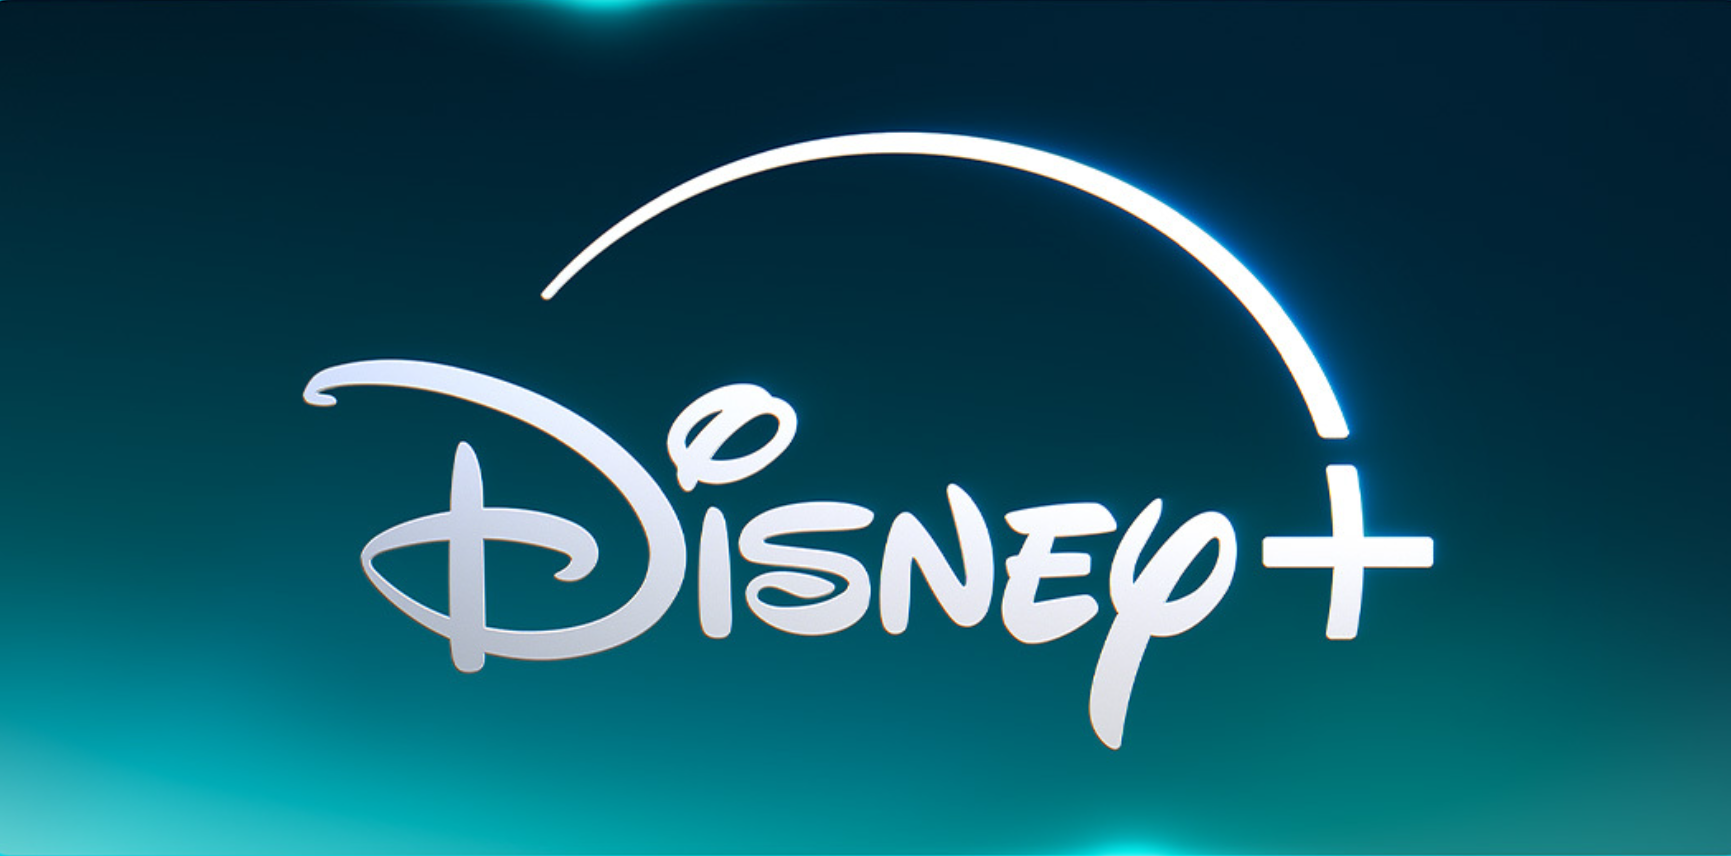 Disney+ : enfin la suite pour cette série extrêmement appréciée et récompensée !